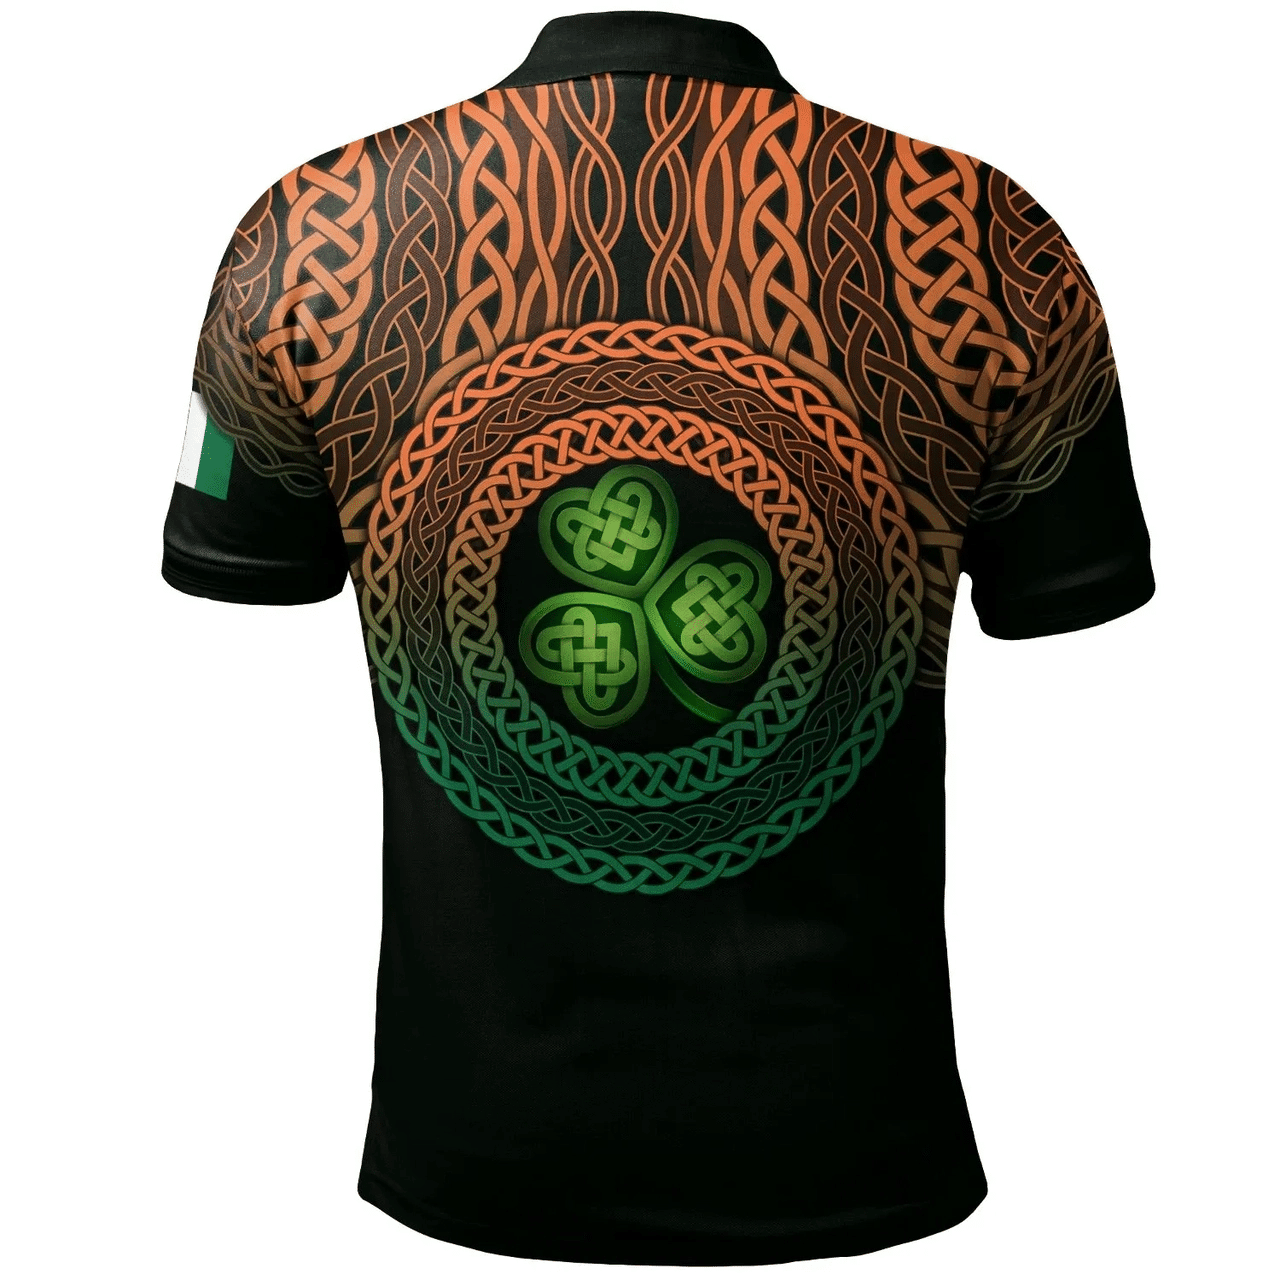 1stIreland Ireland Polo Shirt - Ushburne Irish Family Crest Polo Shirt - Celtic Pride A7 | 1stIreland.com